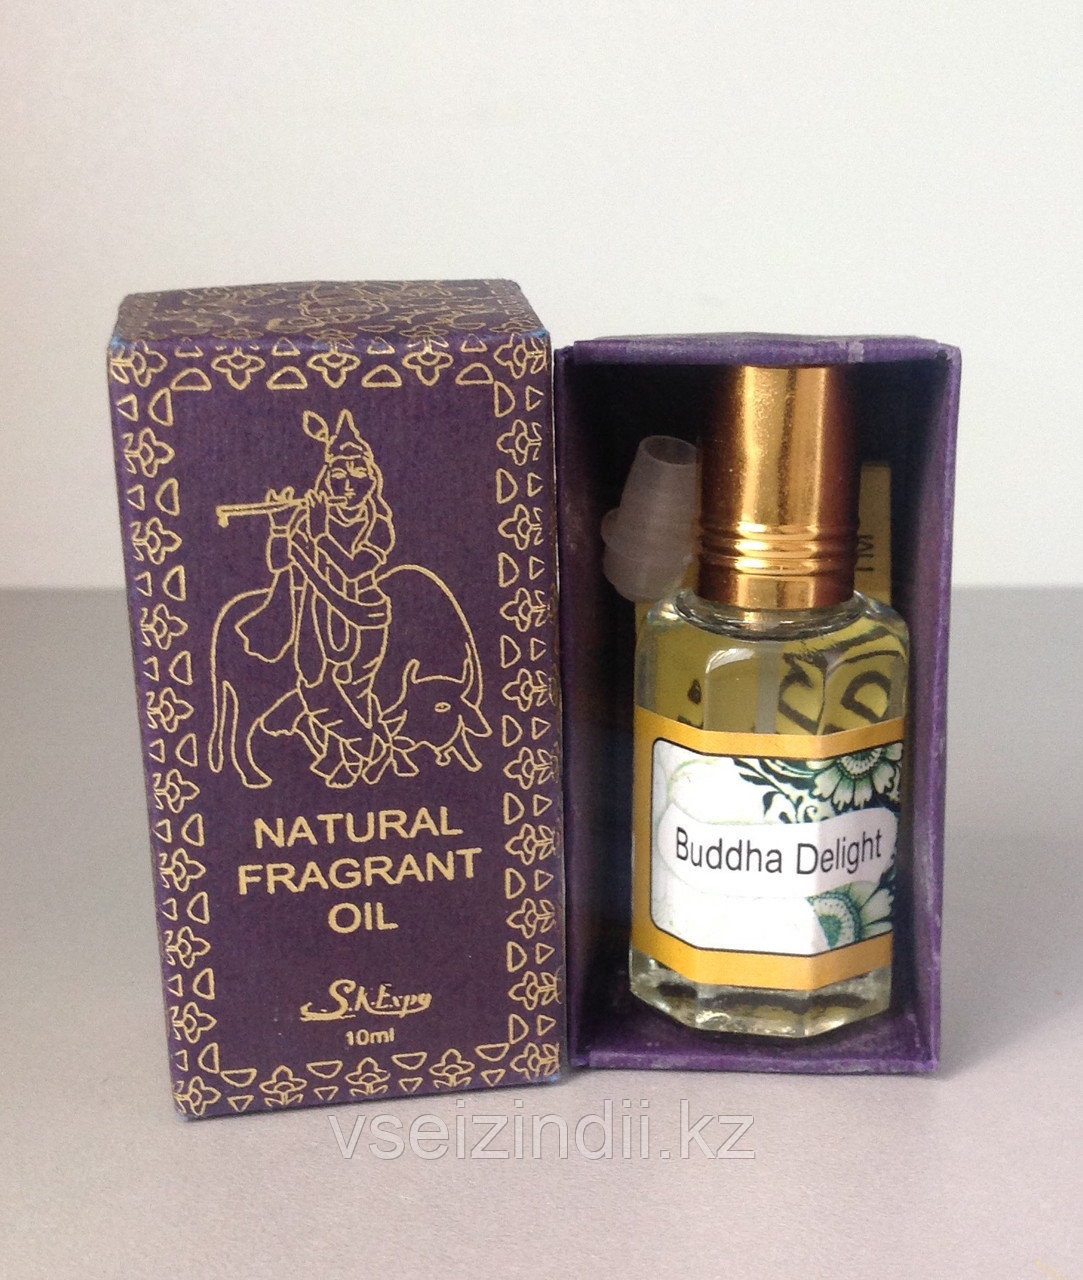 Натуральное масло - парфюм Просветленный Будда, Buddha Delight of India, 10 мл.